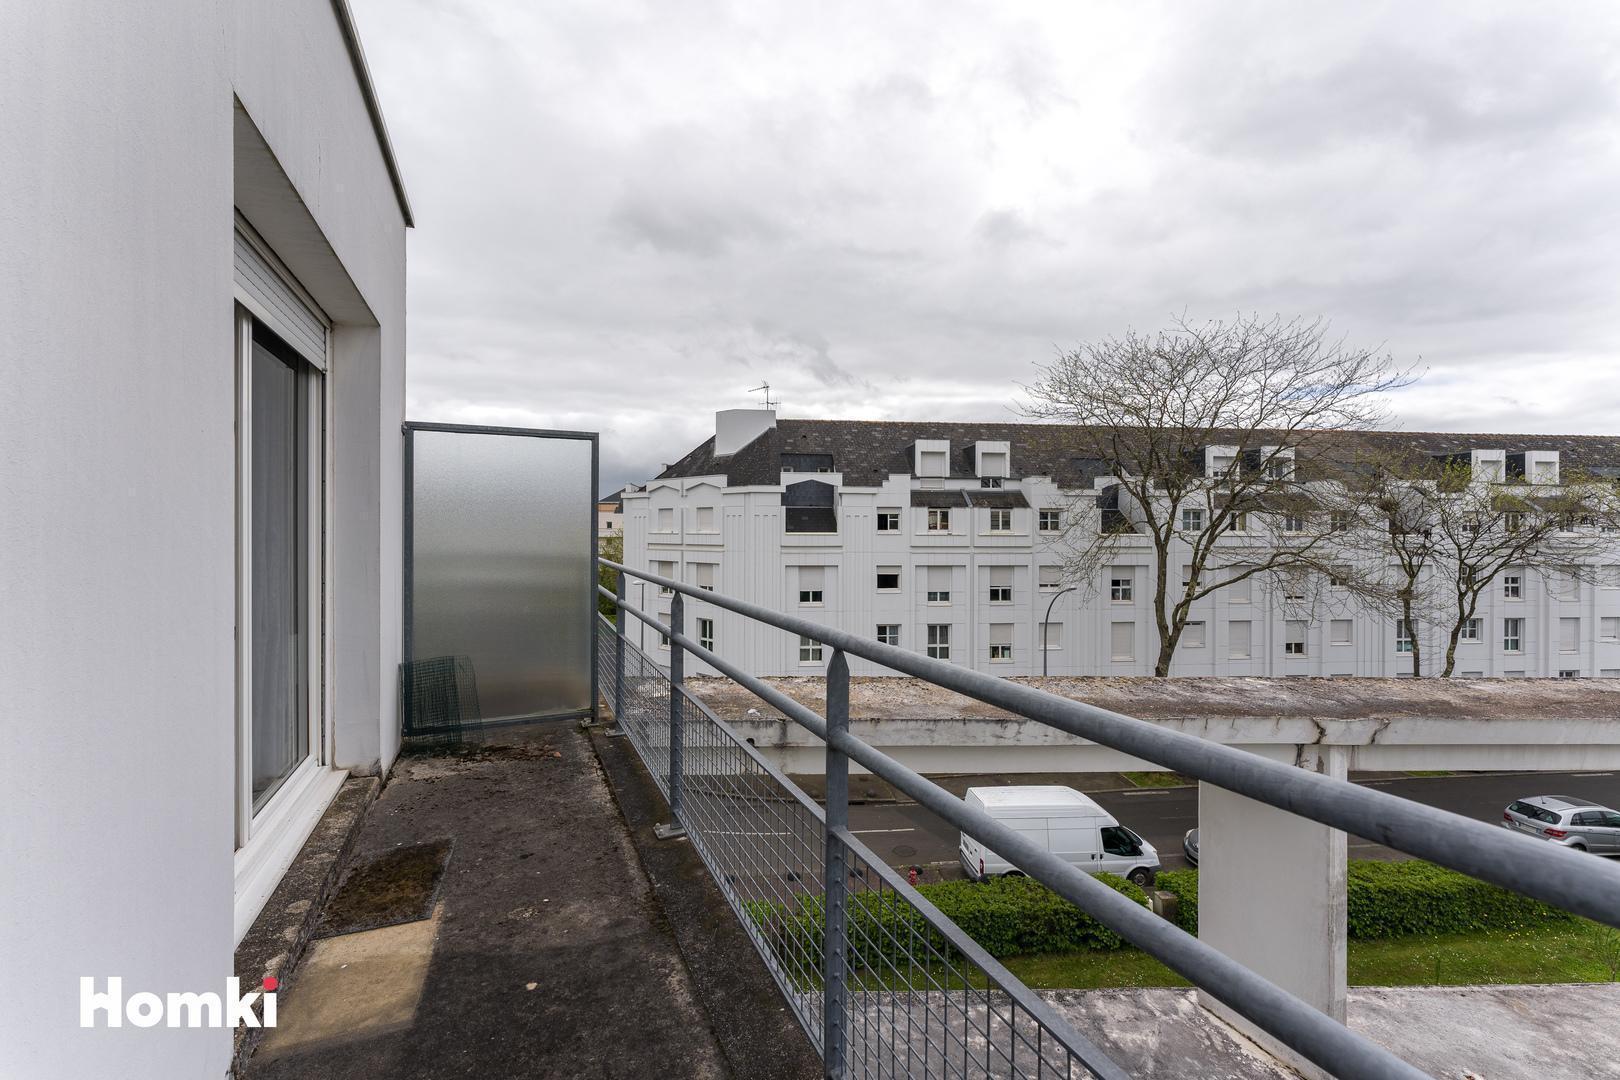 Homki - Vente Appartement  de 49.0 m² à Nantes 44200